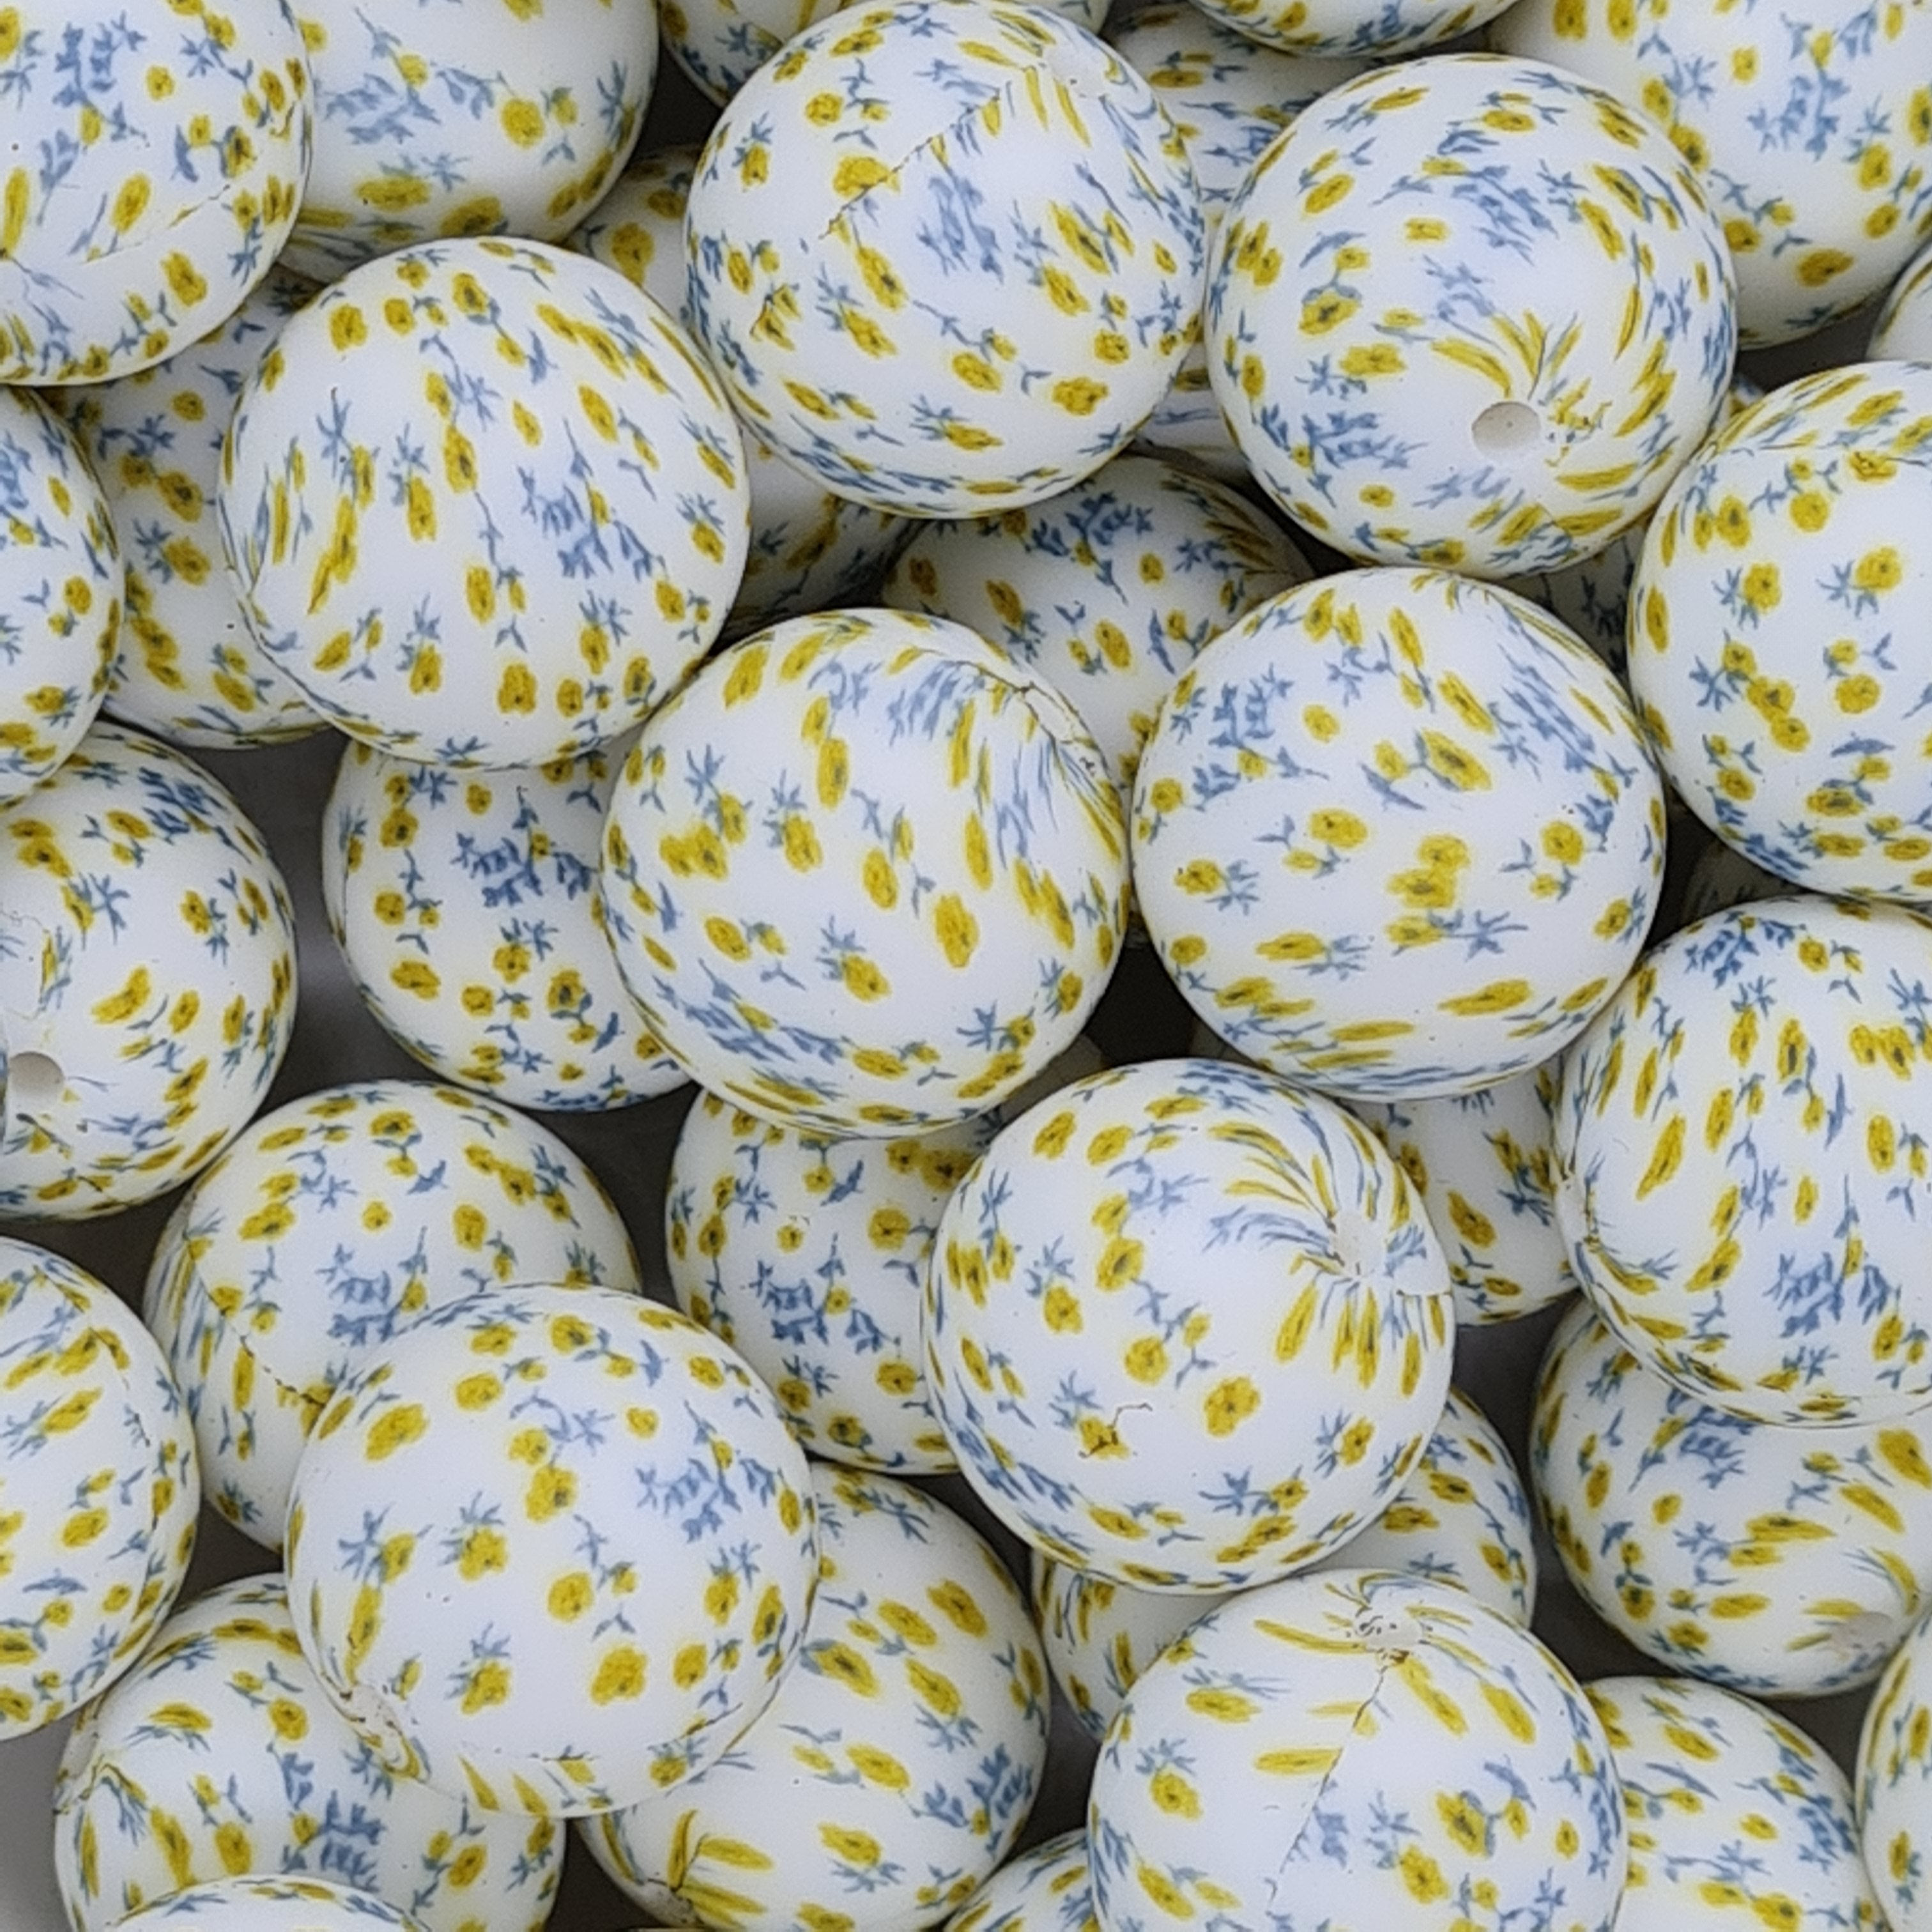 Printed 19mm round beads